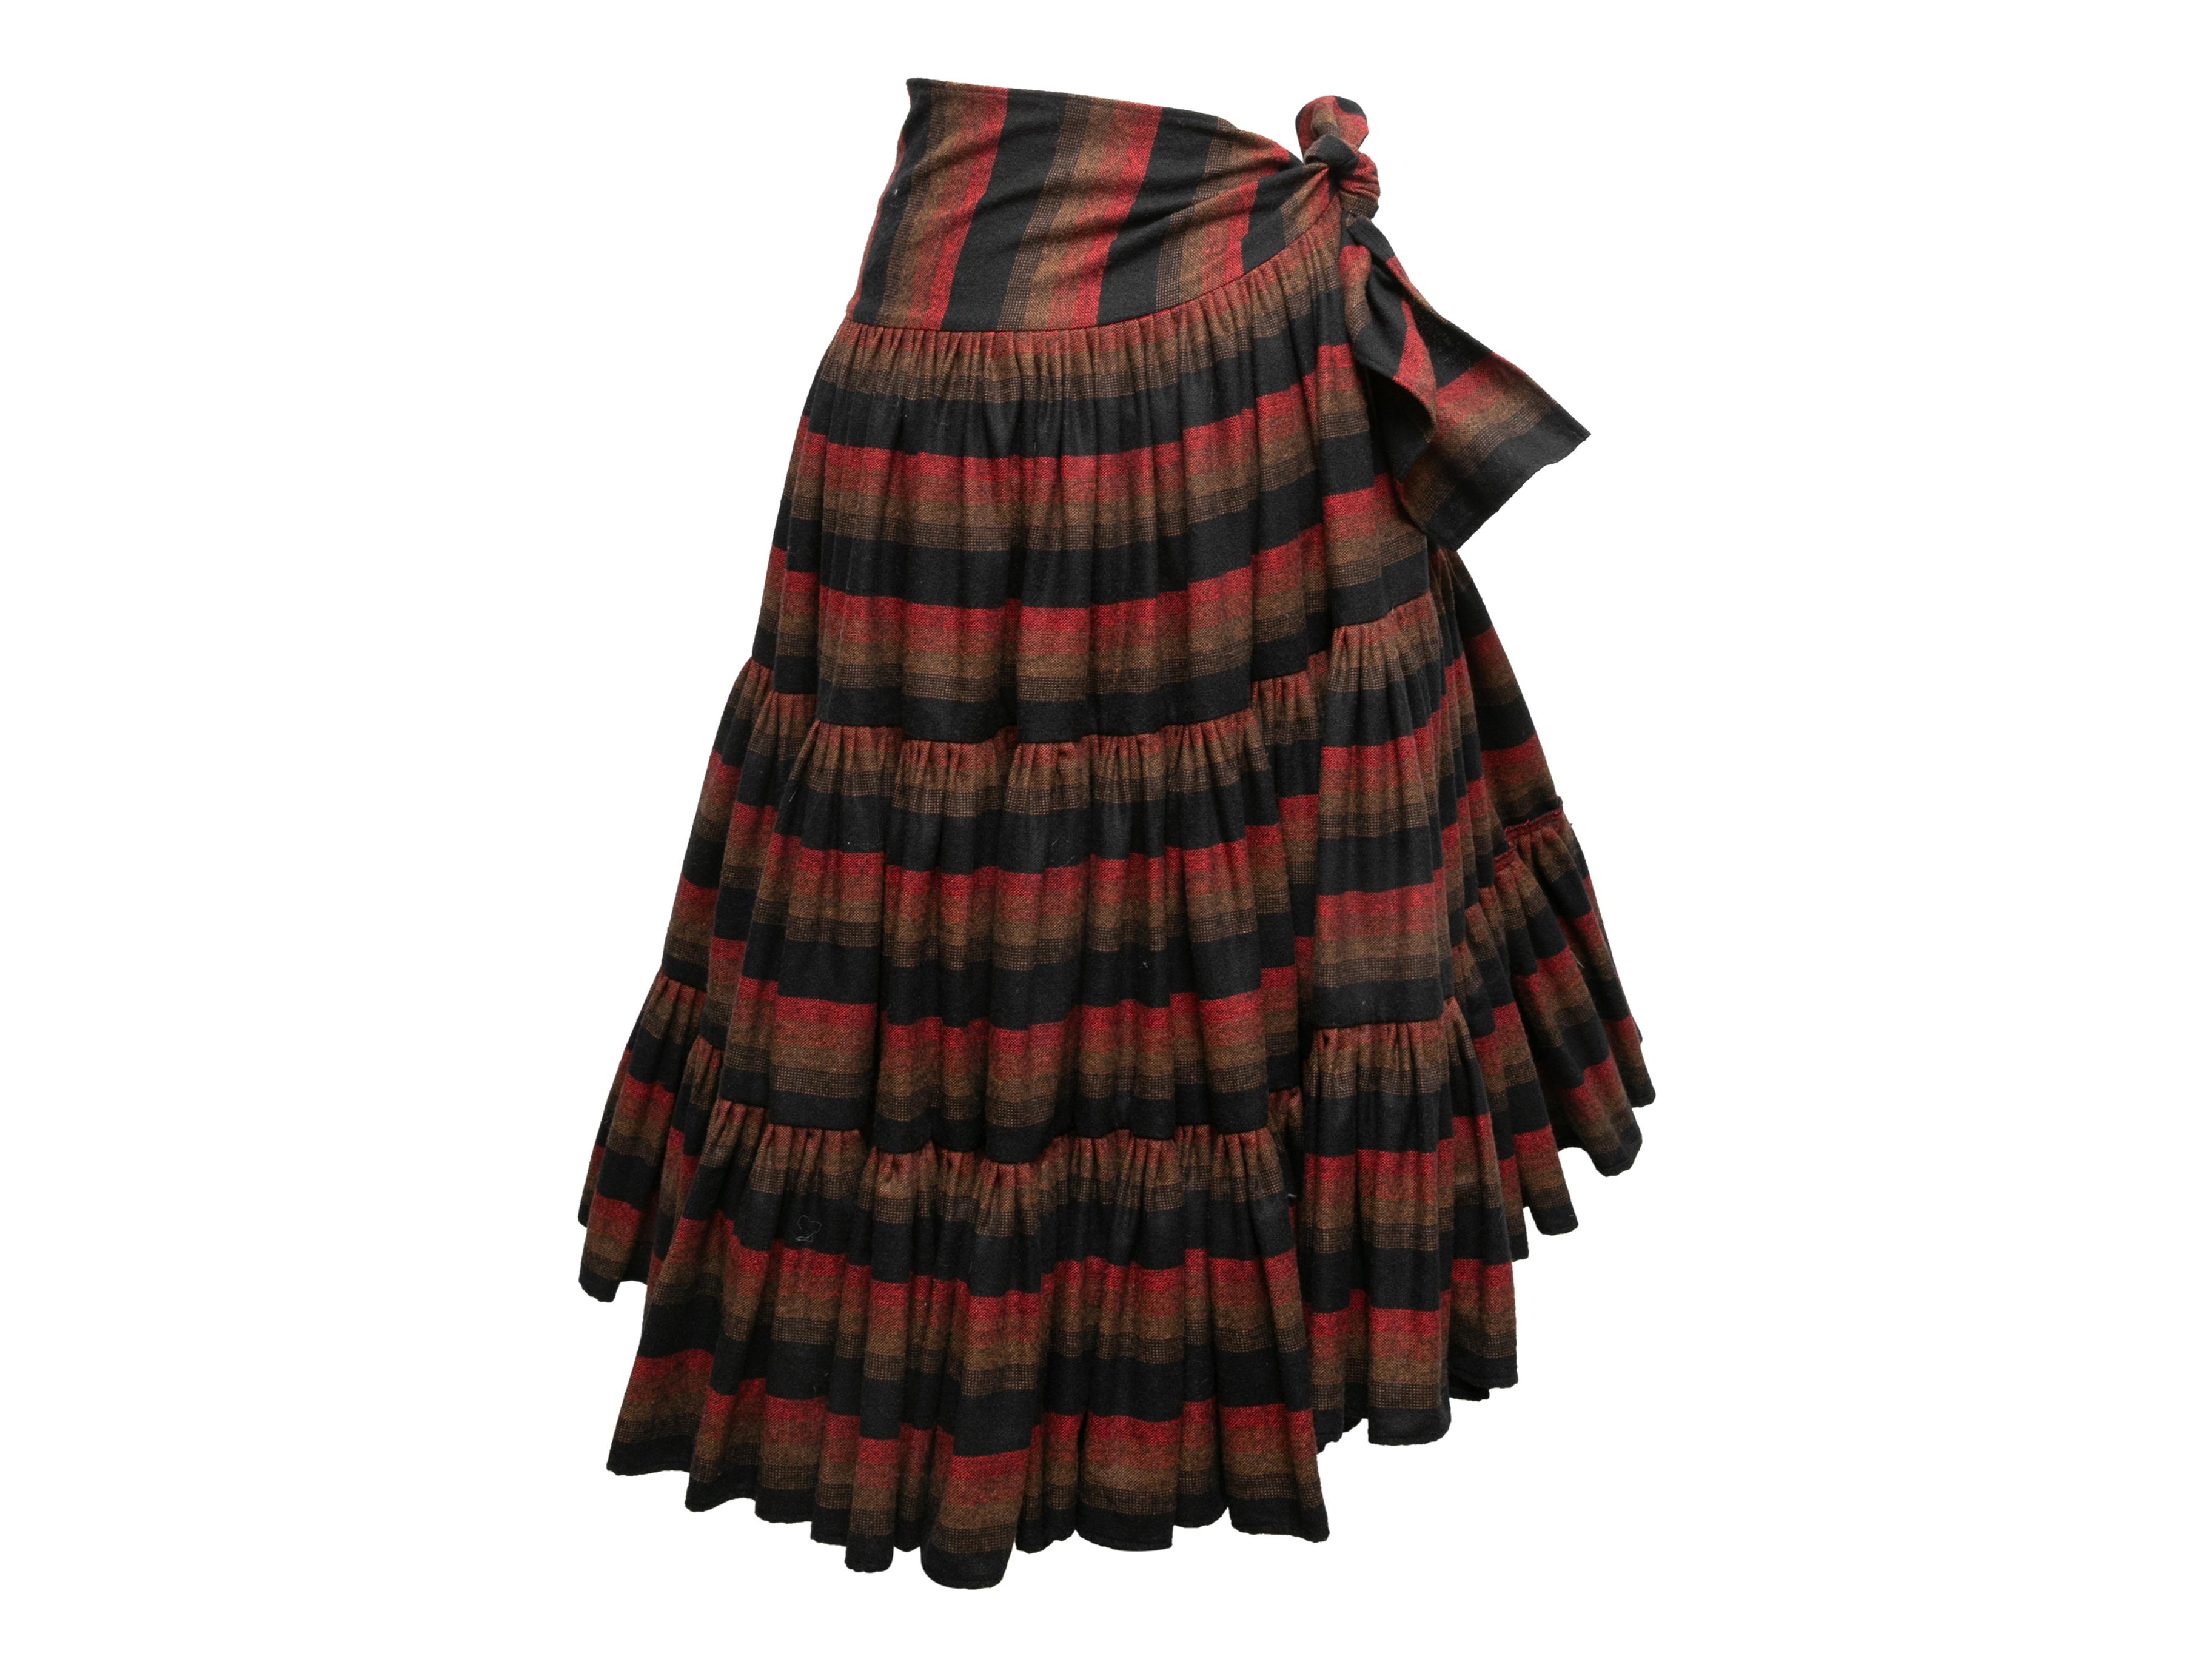 Jupe portefeuille vintage en laine rayée noire et multicolore, Norma Kamali. Vers 1970. Fermeture à nouer sur la hanche. Taille 26